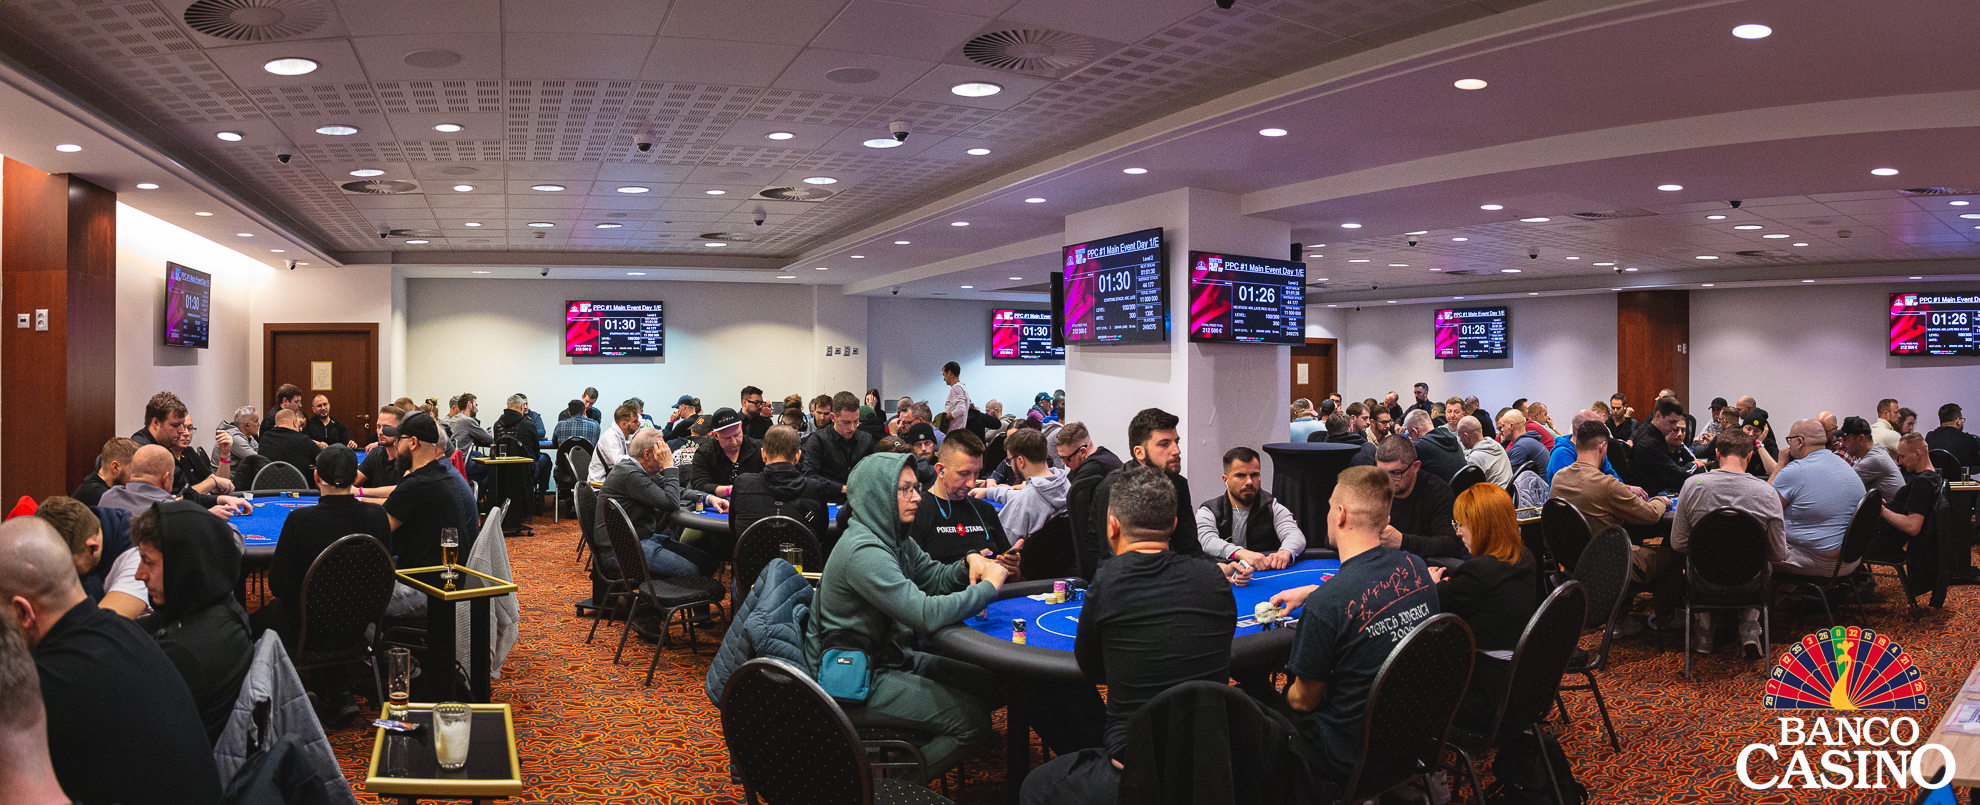 Die Poker-Community aus der ganzen Welt ist im Banco Casino dabei, Rekorde zu brechen!